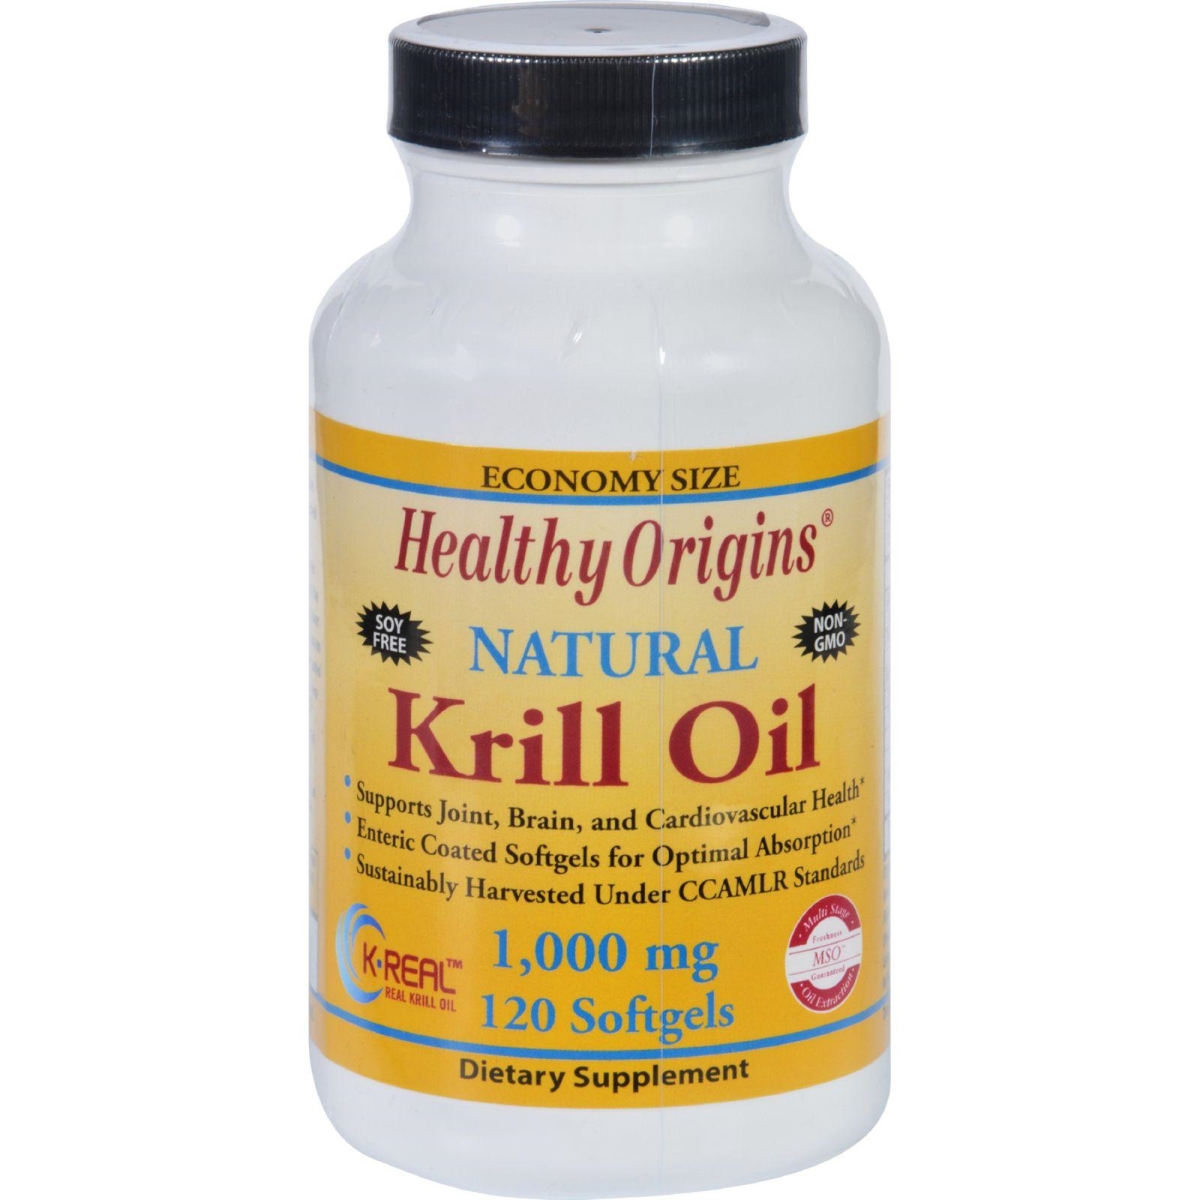 Hg1352392 1000 Mg Krill Oil - 120 Softgels